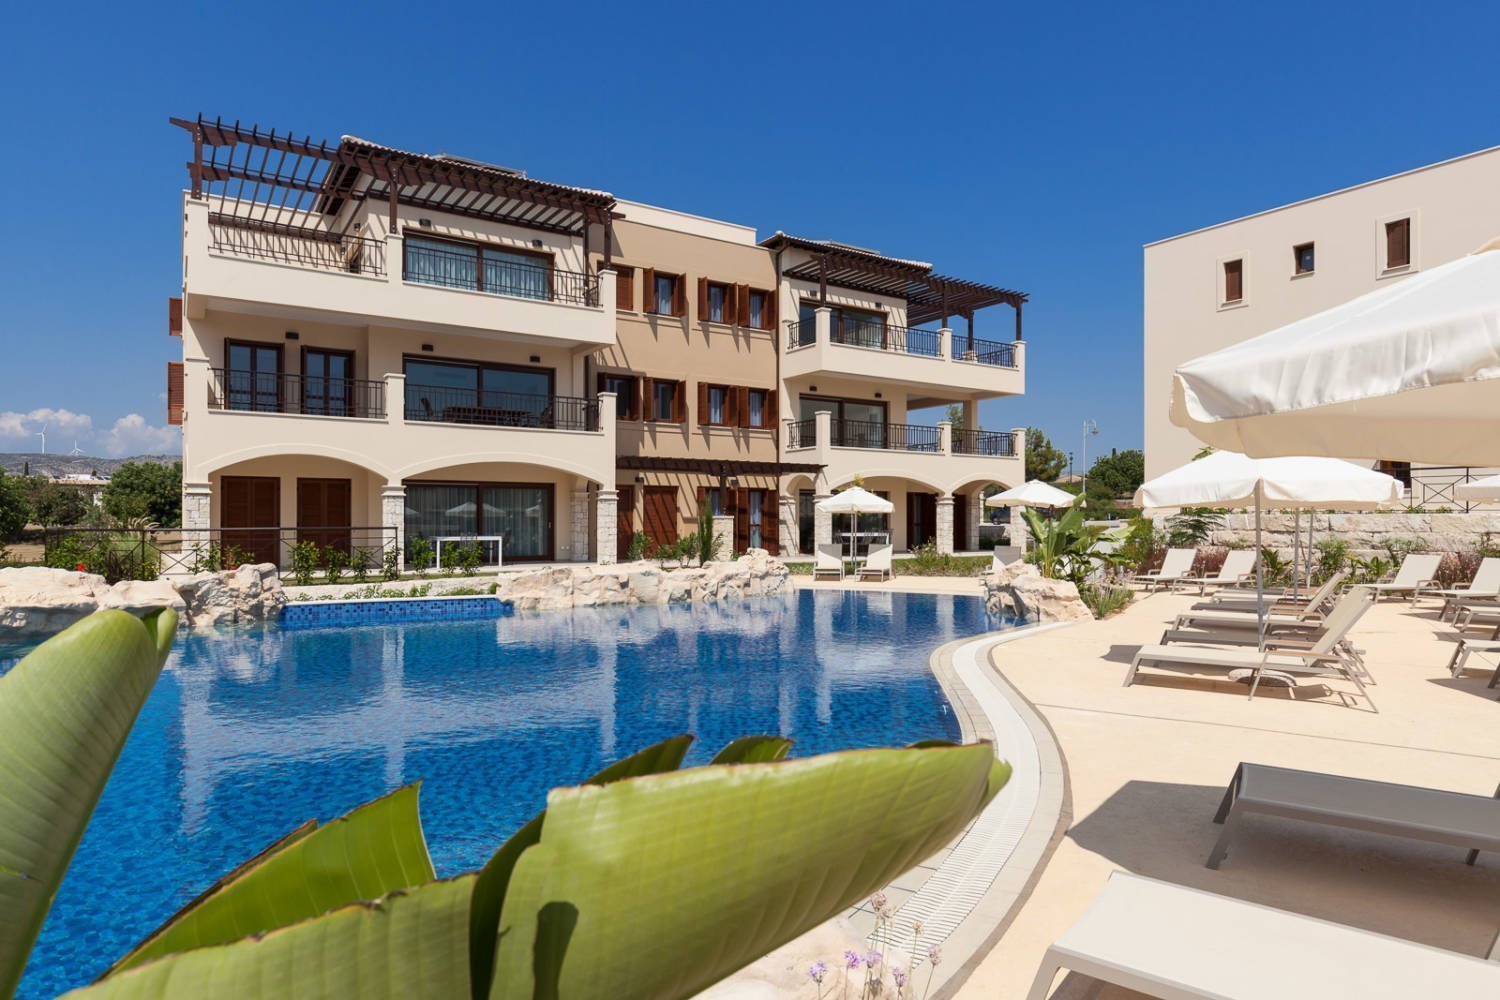 Το Aphrodite Hills Resort αναφέρεται τώρα στο Homes & Villas από το Marriott International